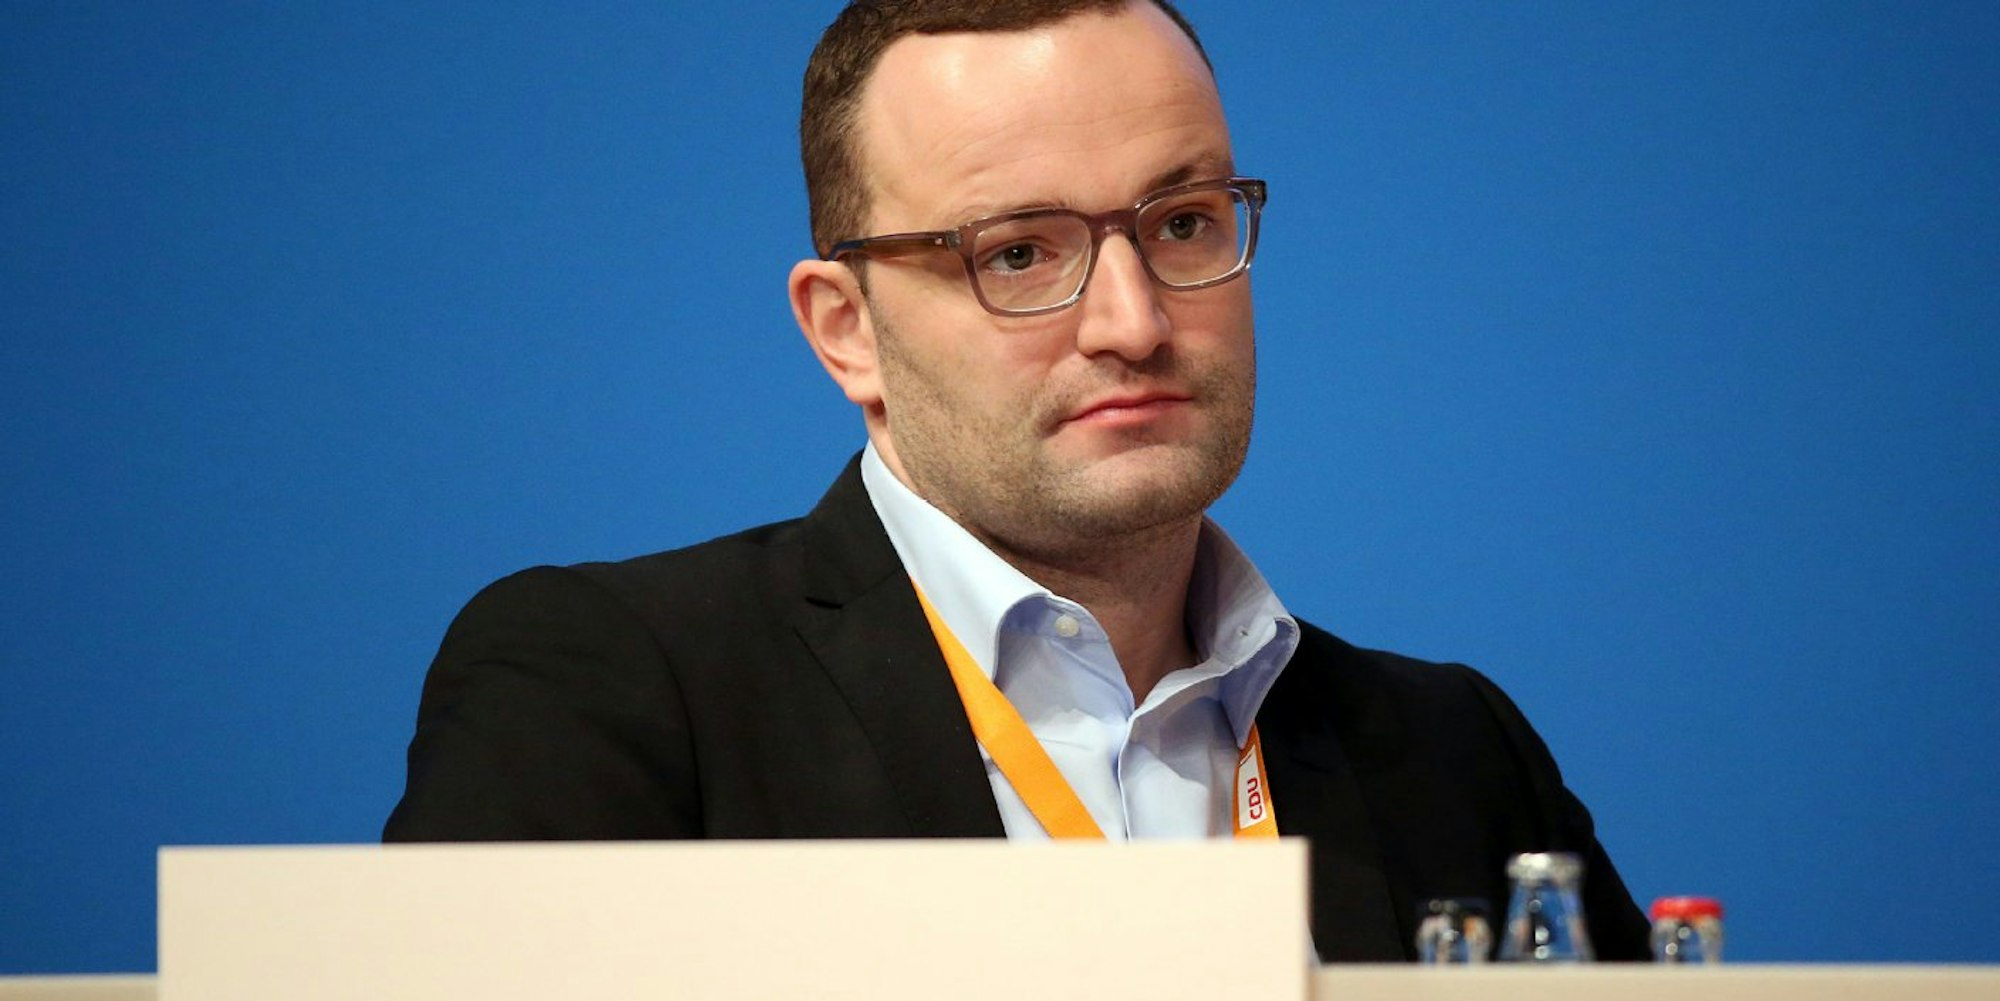 CDU-Vorstandsmitglied Jens Spahn